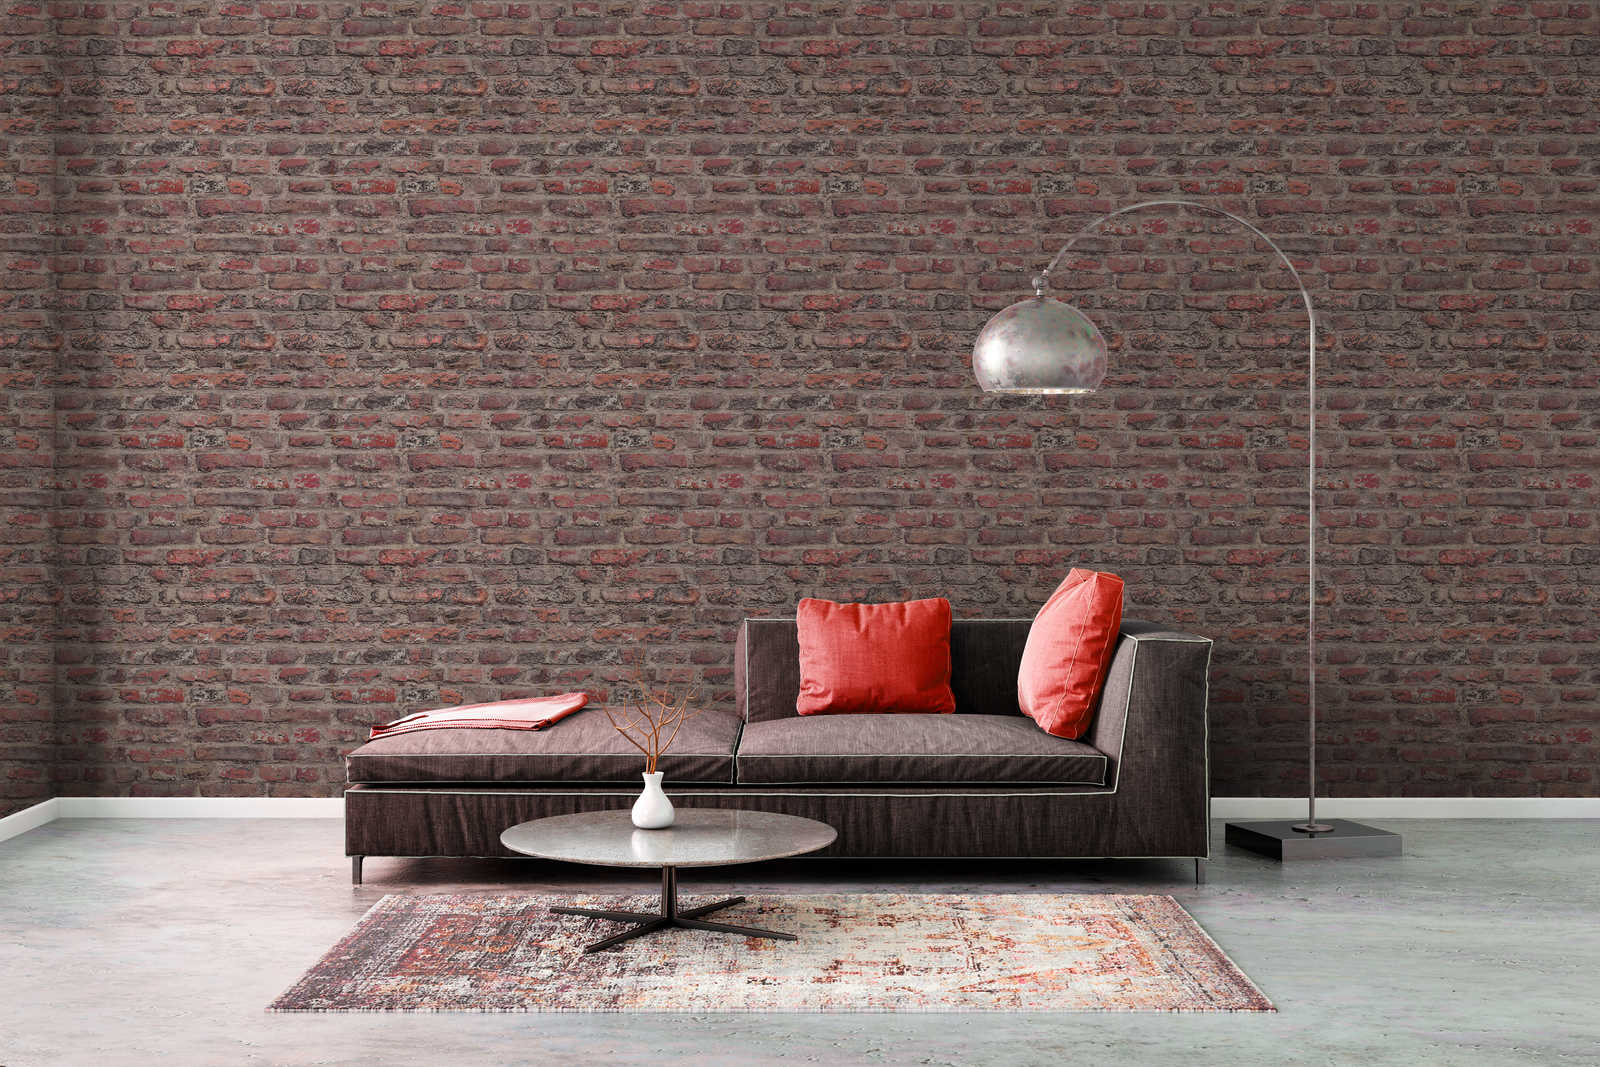             Vliestapete mit Ziegelmauer Design – Rot, Braun
        